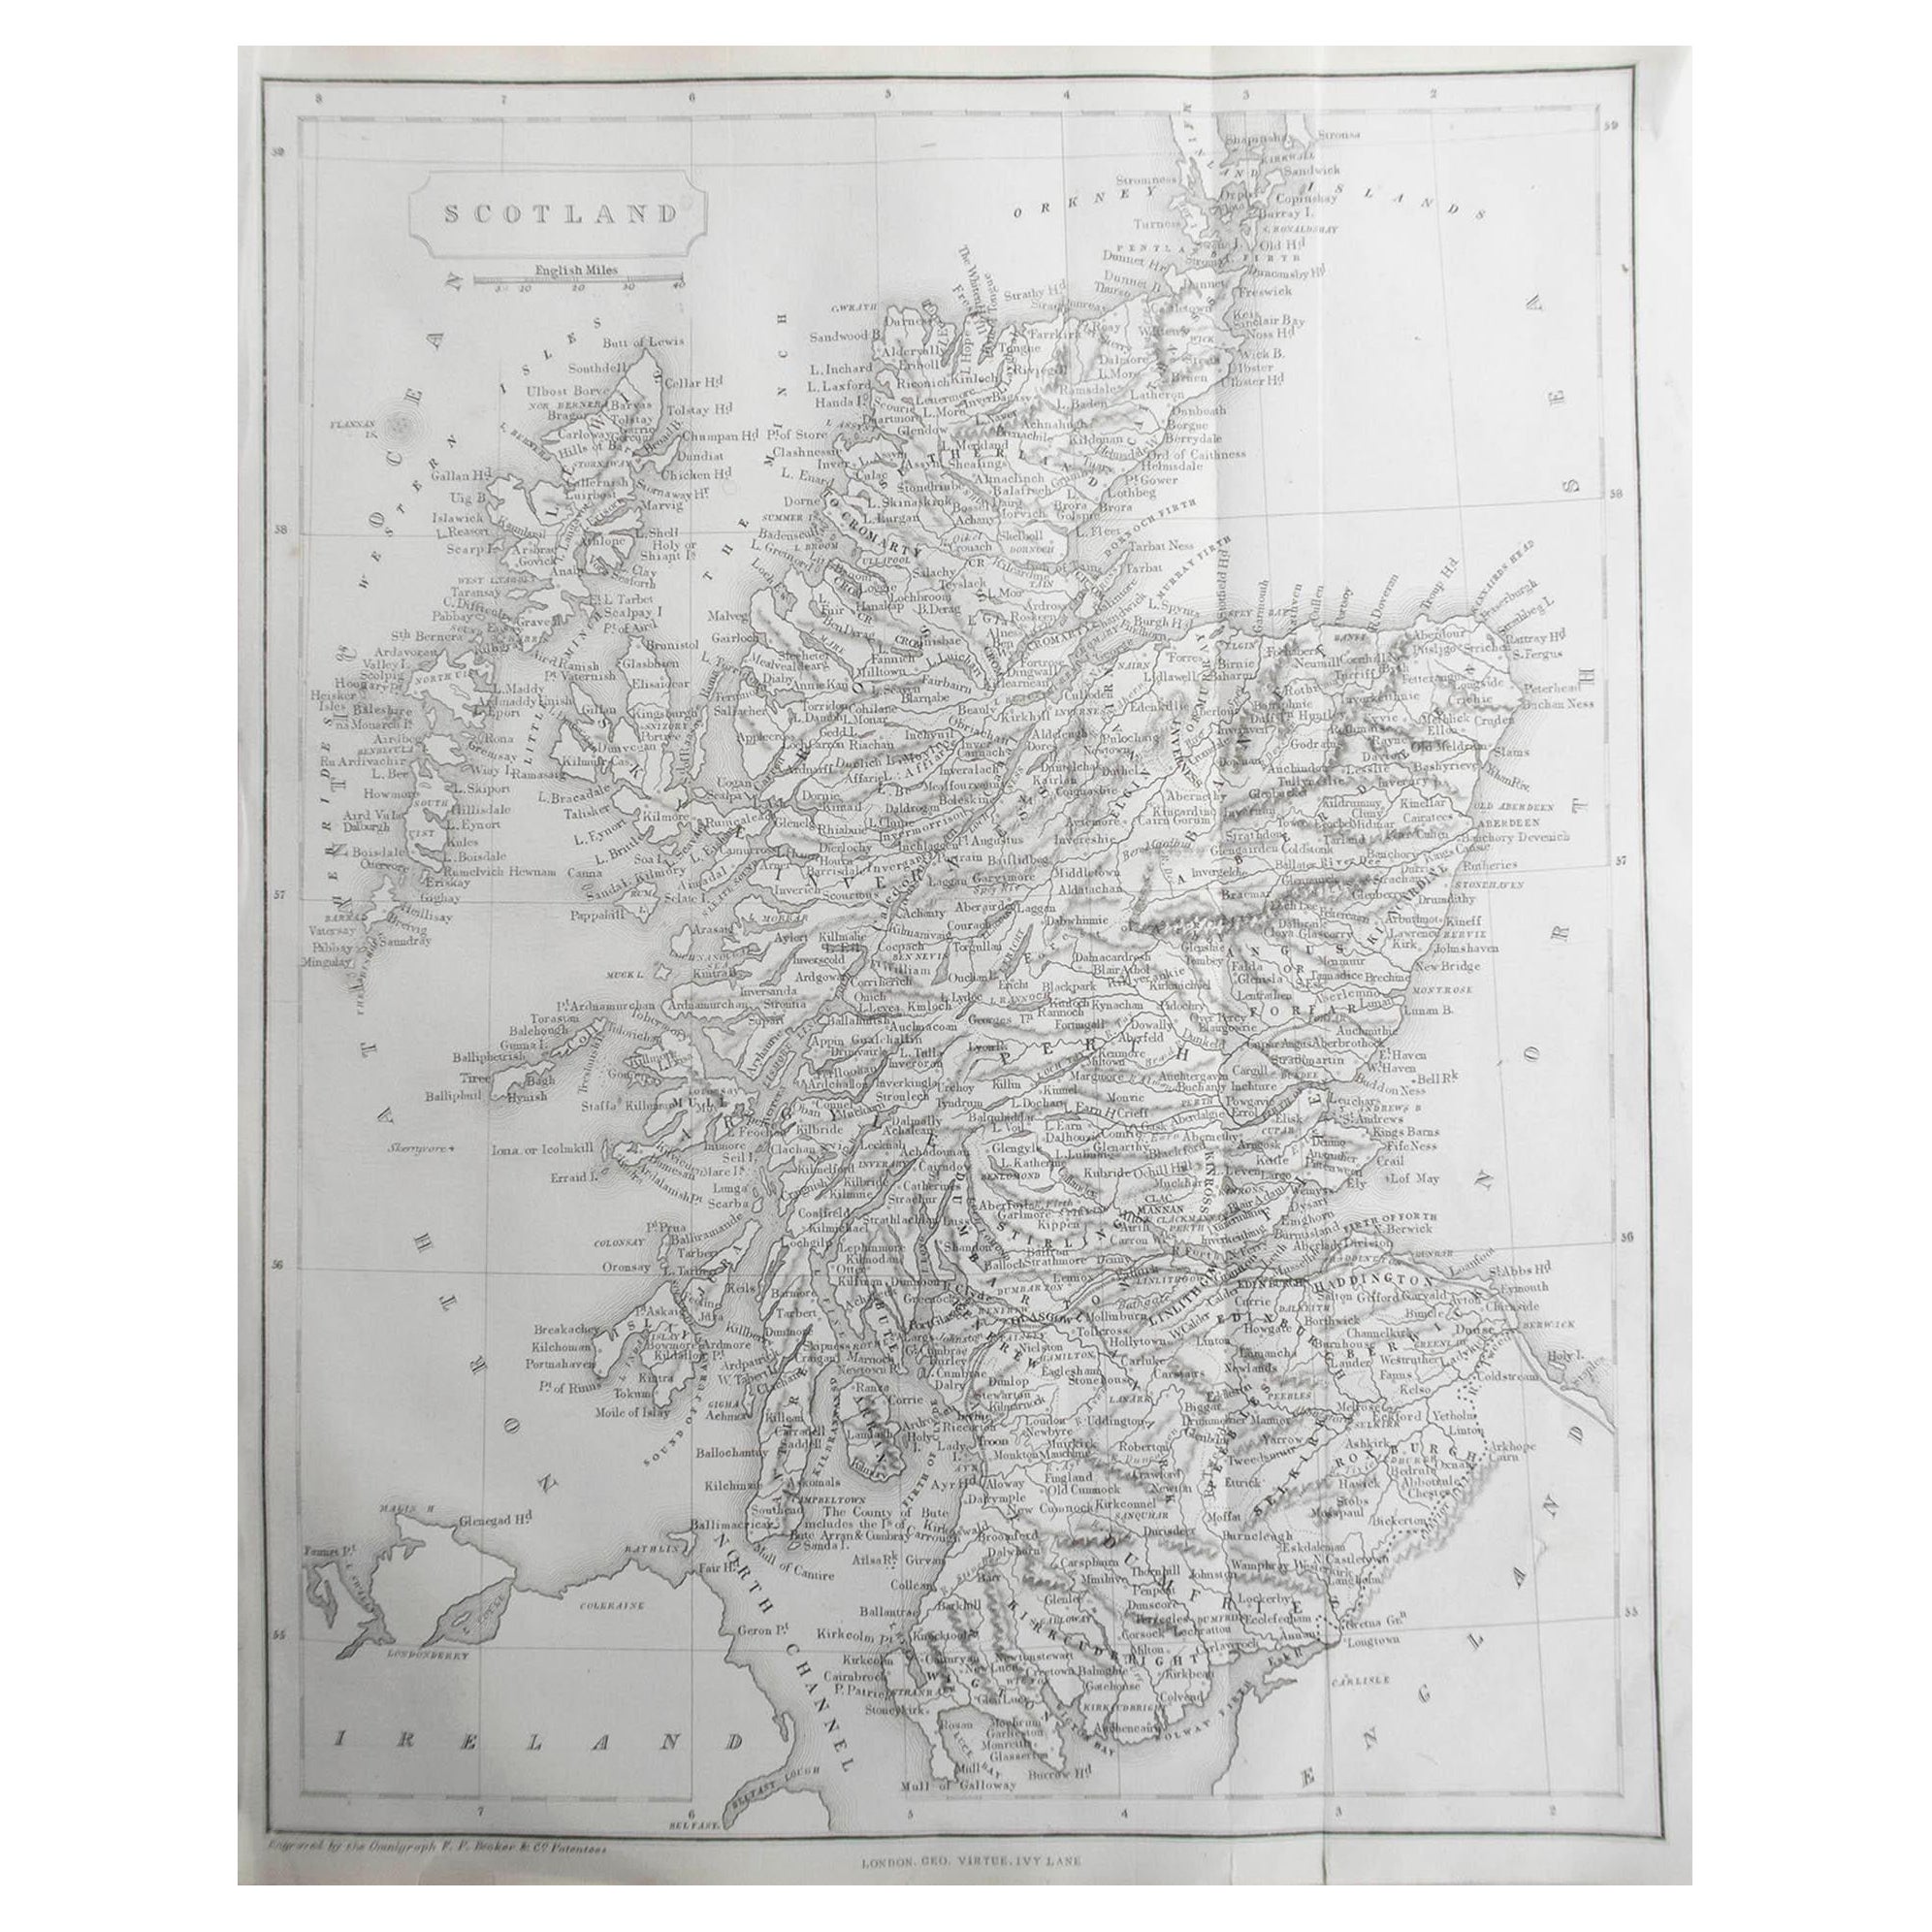  Original Antique Map of Scotland by Becker. C.1850 